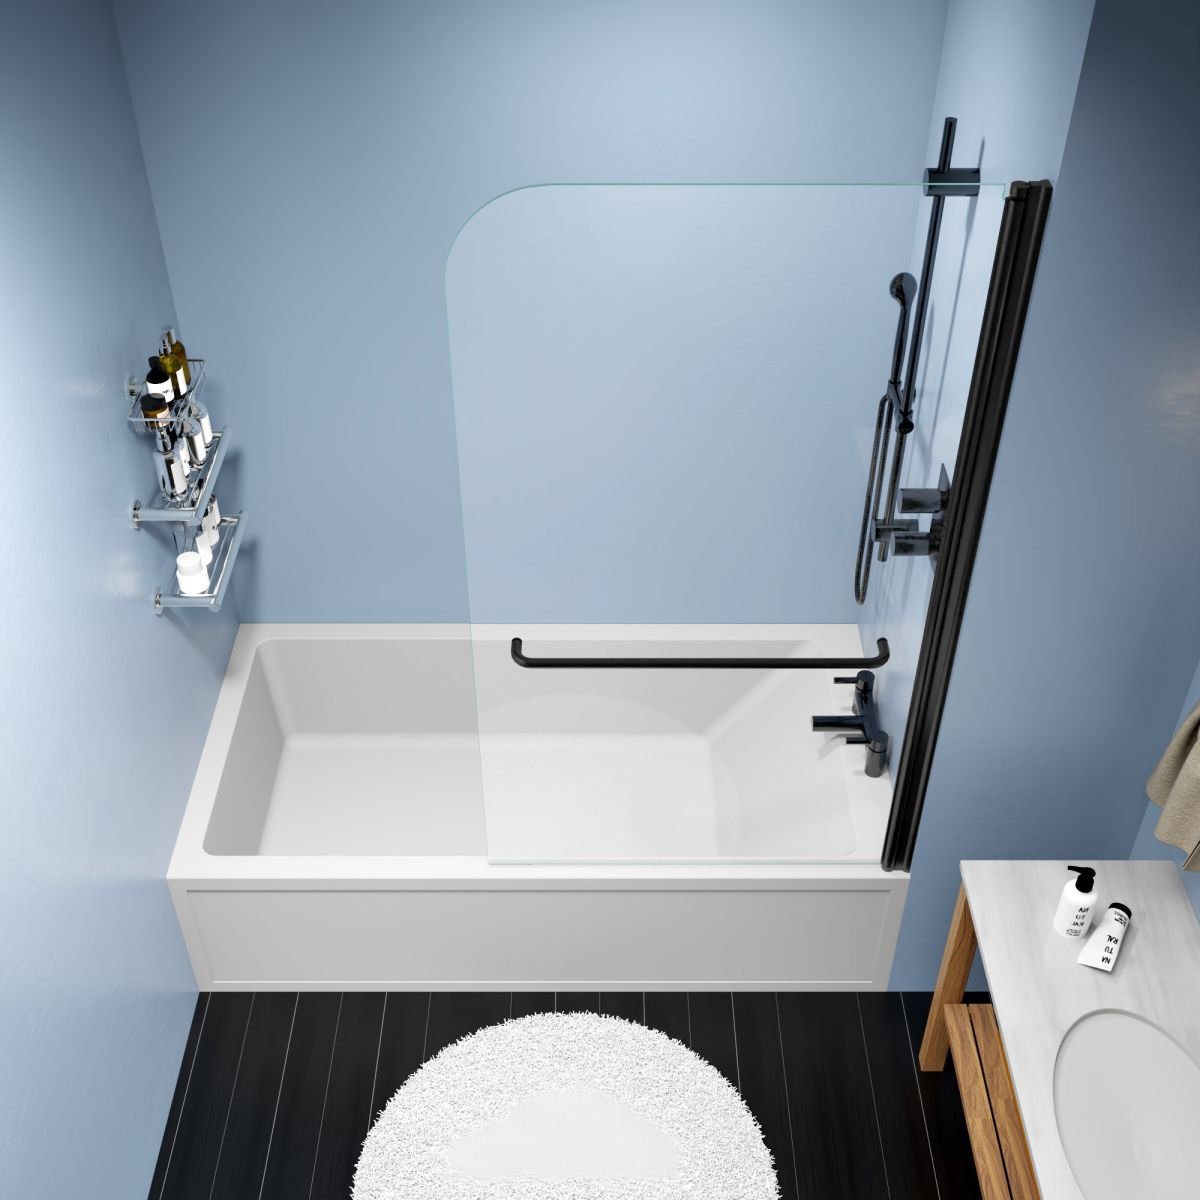 Serenity Shower Door Over Tub,34" W*58" H Pivot Frameless Tub Shower Door,Clear Tempered Glass Shower Screen Panel for Bathroom,Matte Black